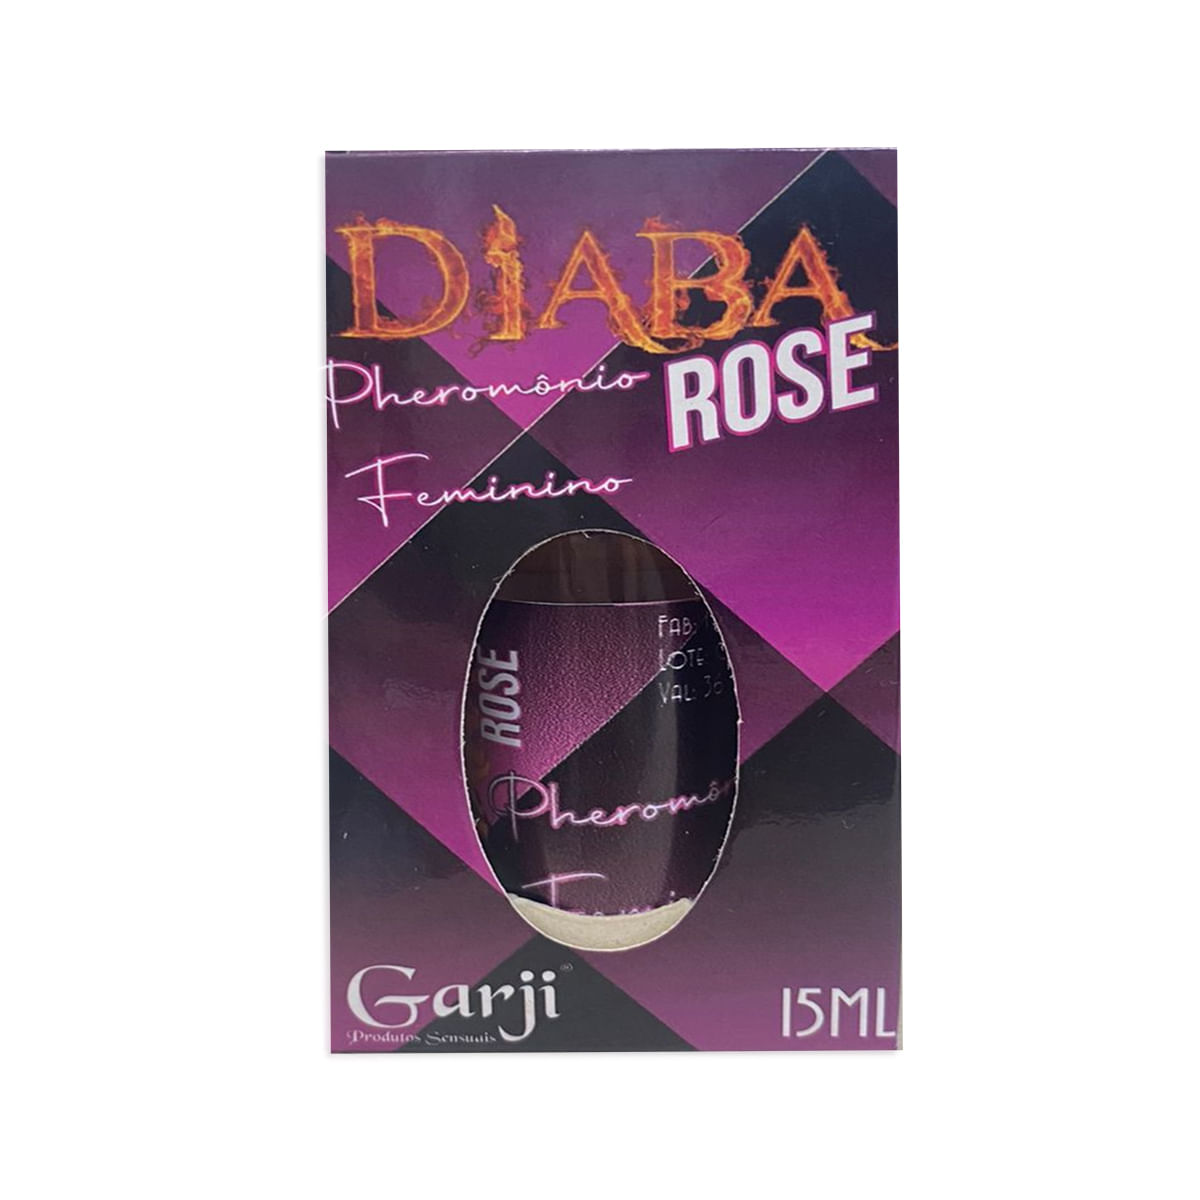 Diaba Rose Perfume Feminino 15ml Garji